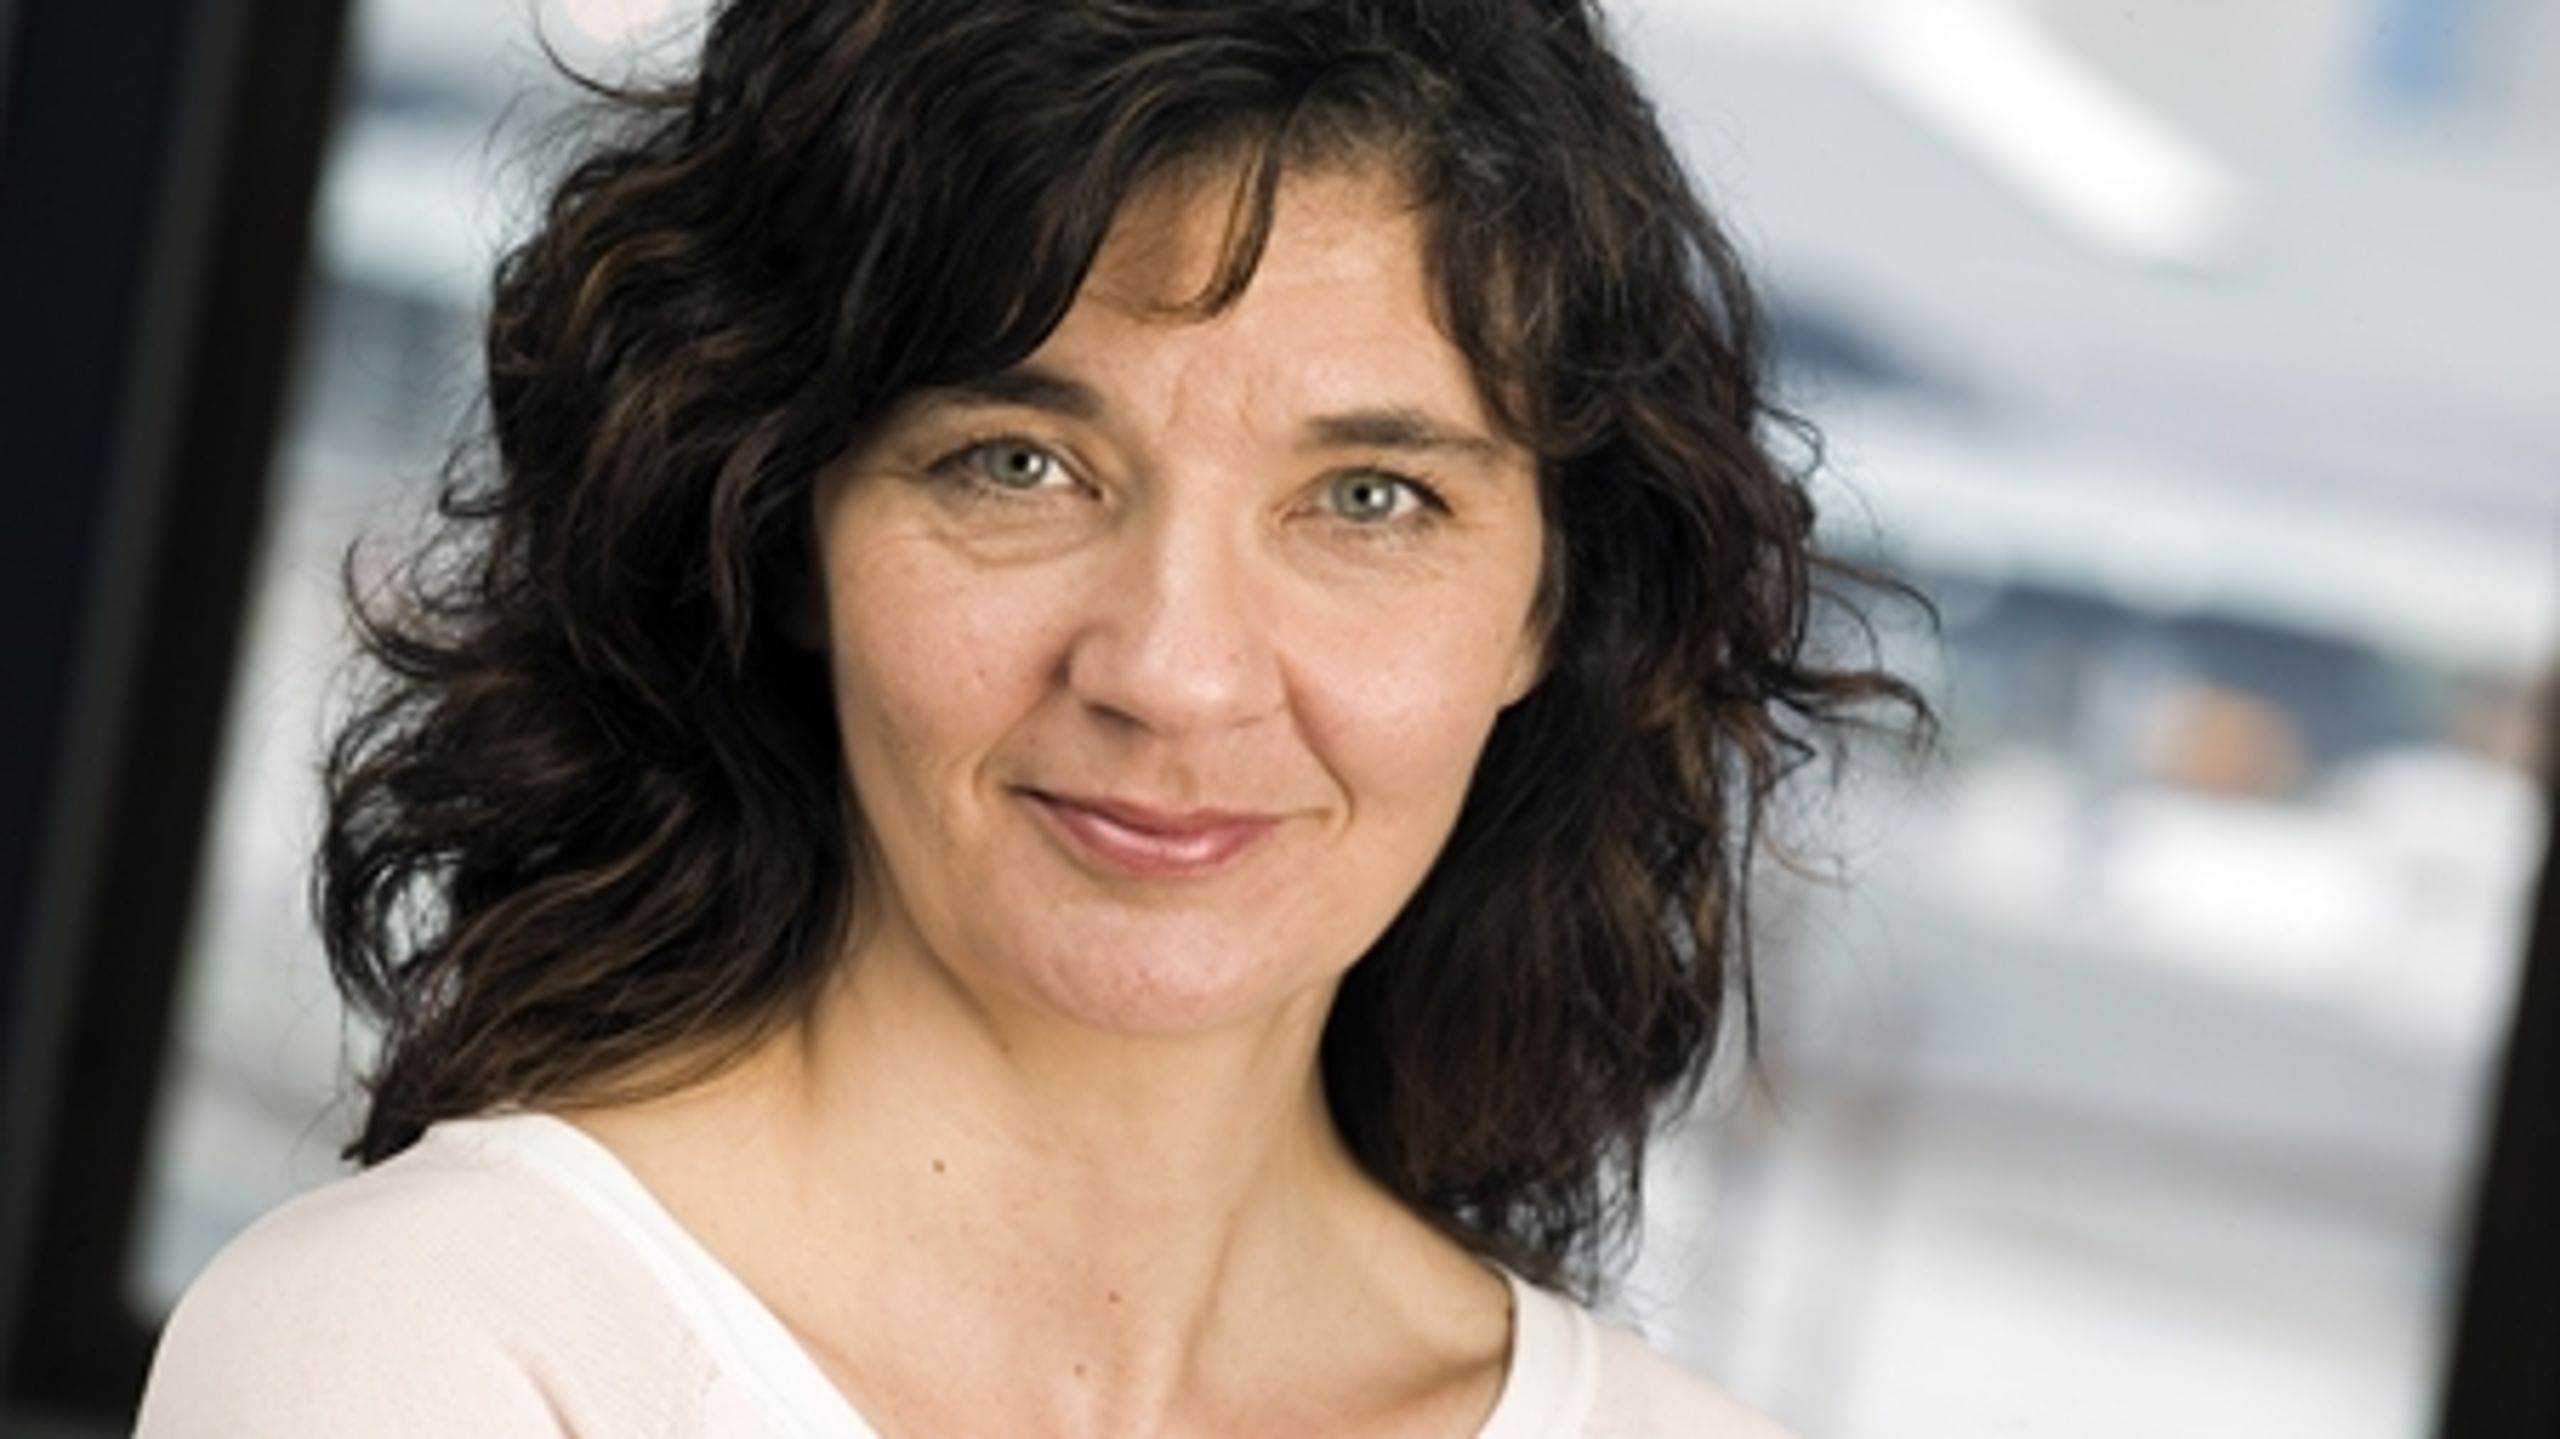 Agi Csonka har været direktør for EVA siden januar 2007. Hun er Ph.d. i organisation og ledelse fra Institut for Statskundskab på Københavns Universitet og har en karriere som forsker, ledelseskonsulent og HR-chef bag sig.